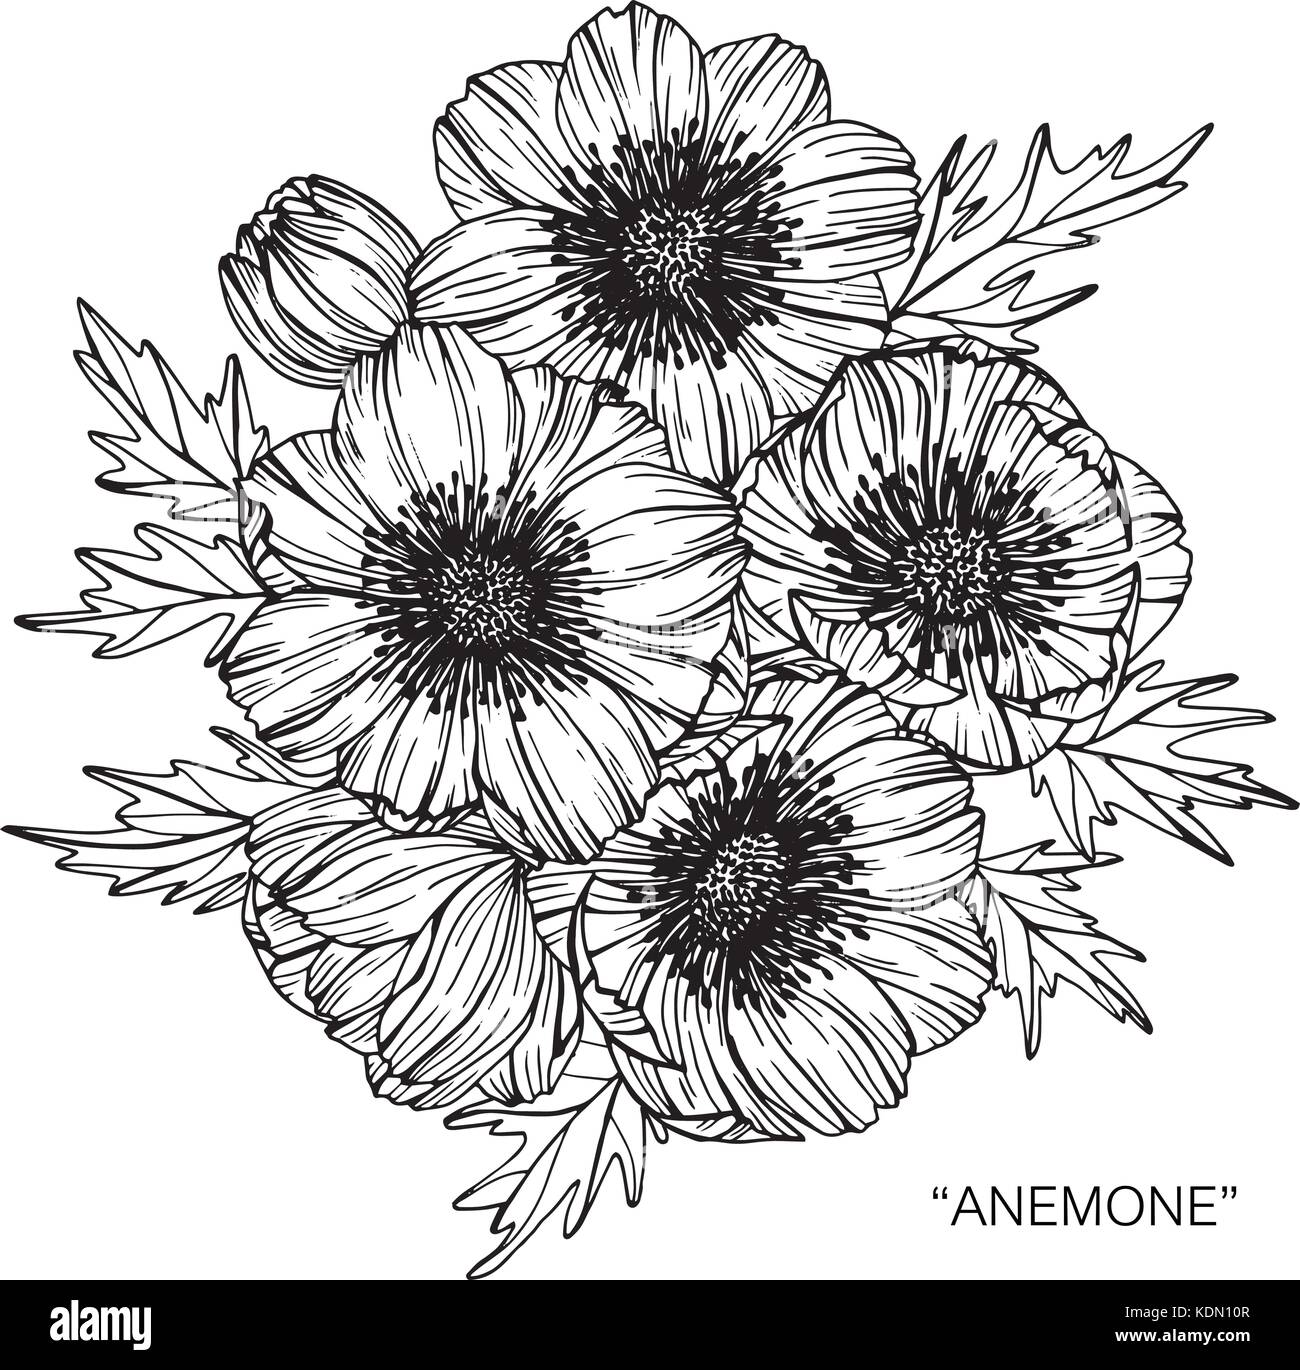 Fiore di Anemone disegno illustrativo. In bianco e nero con la linea tecnica. Illustrazione Vettoriale